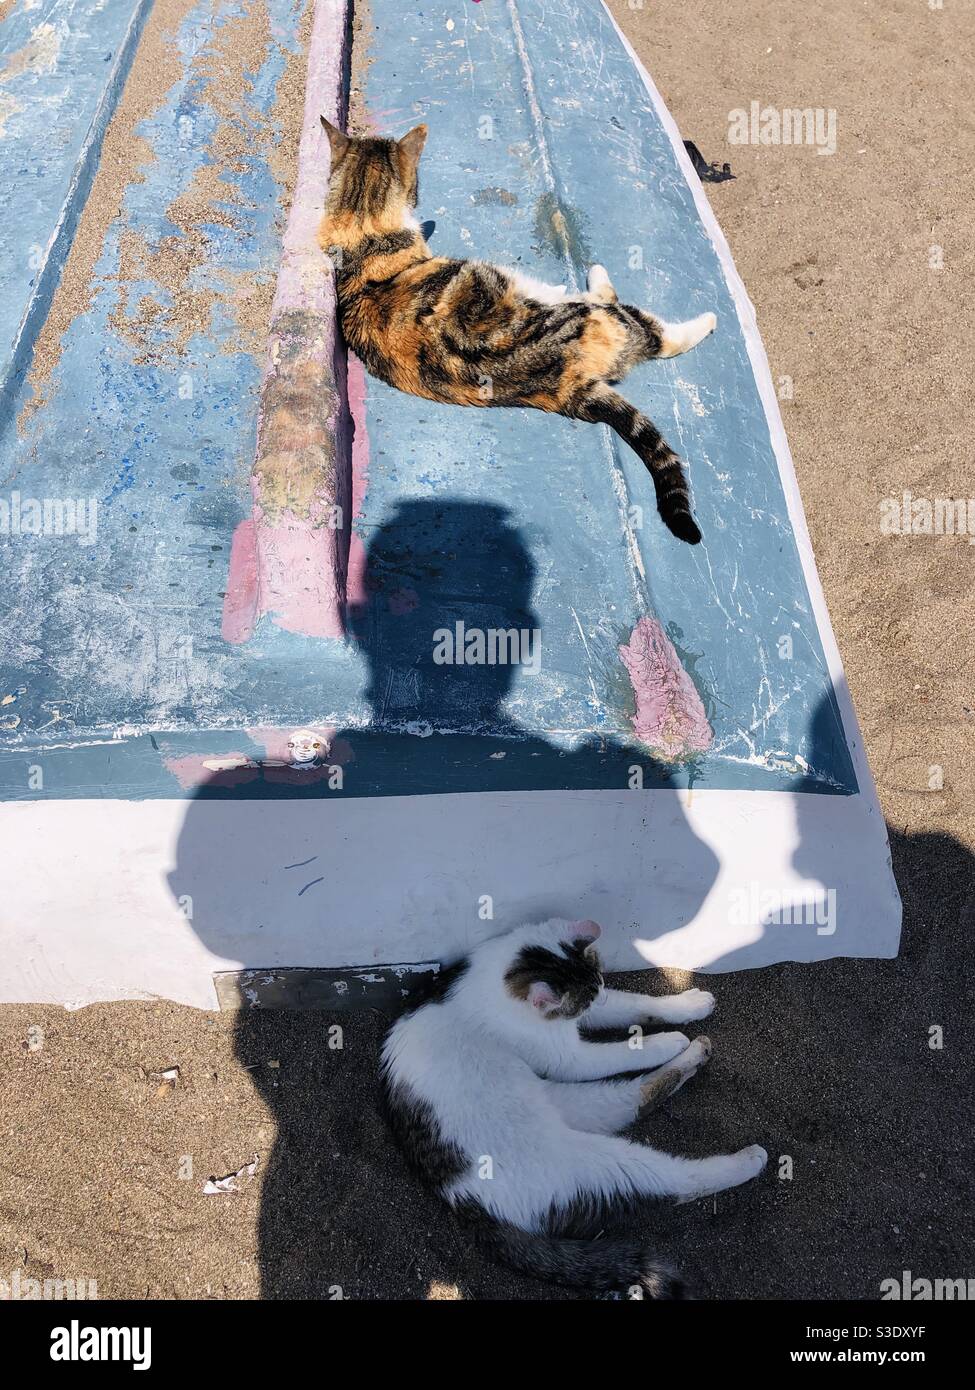 Street Cats riposante su una barca da pesca capovolta e ombra di una persona Foto Stock